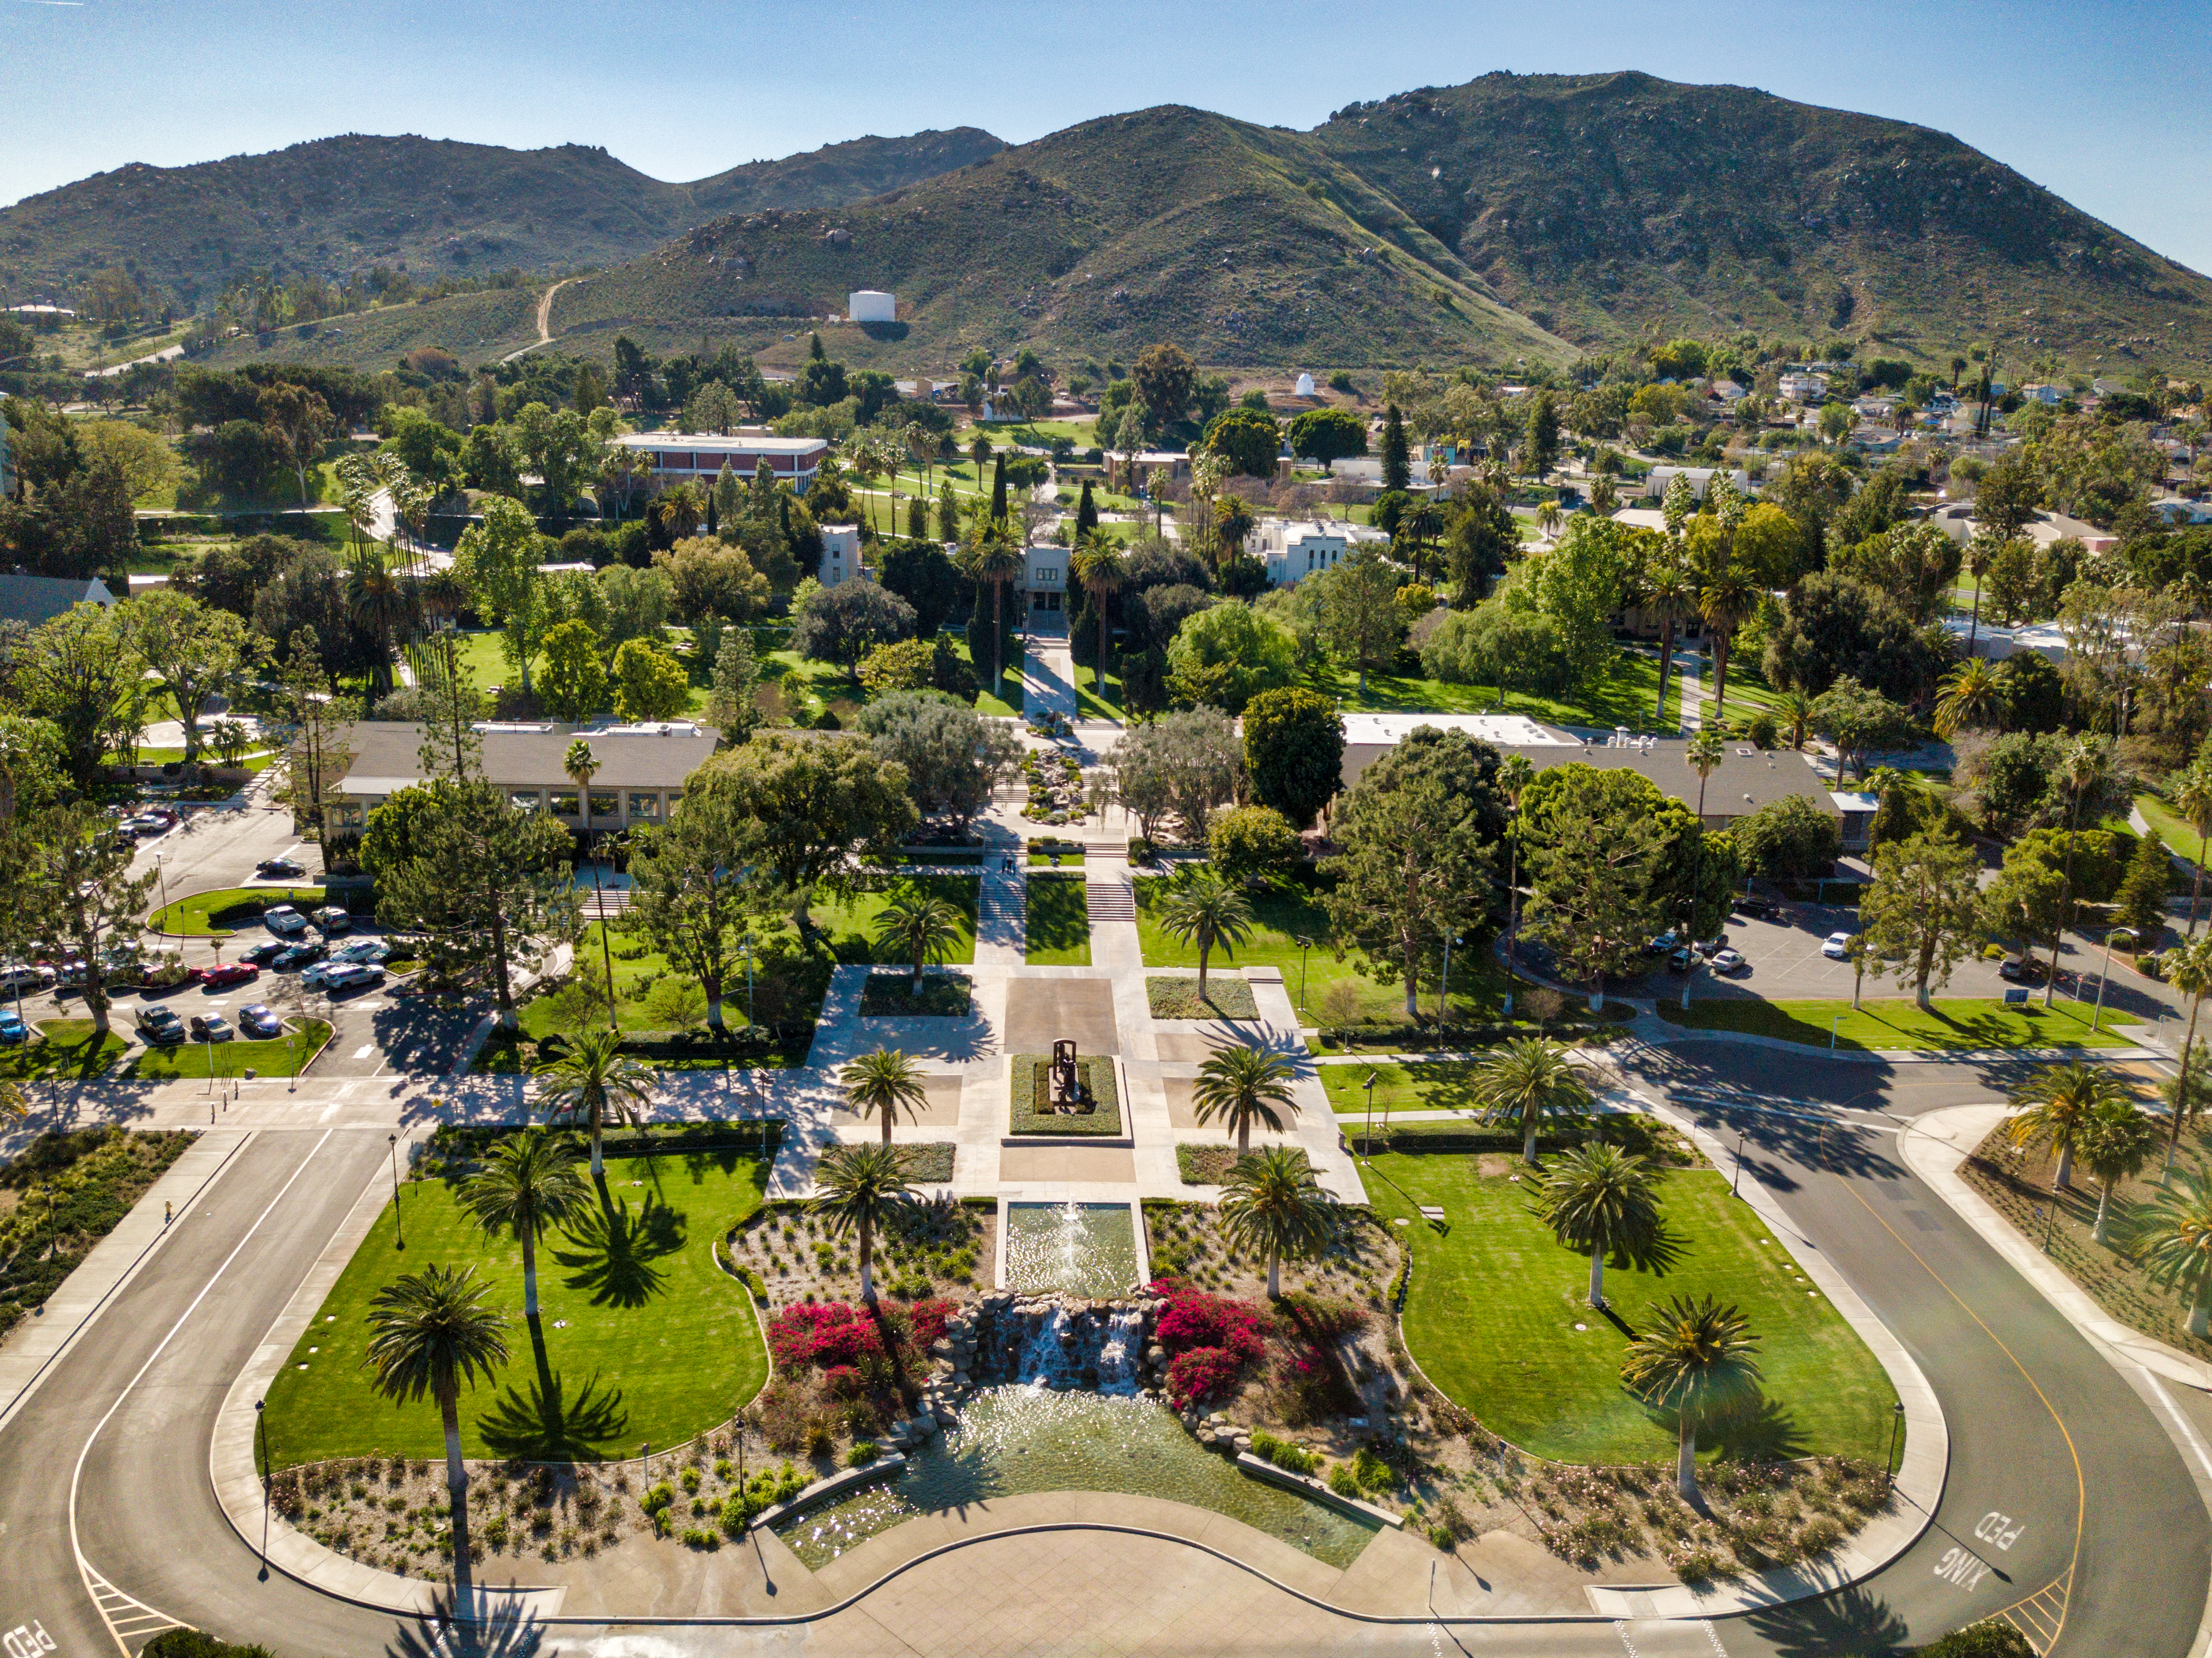 La Sierra University aerial view of campus